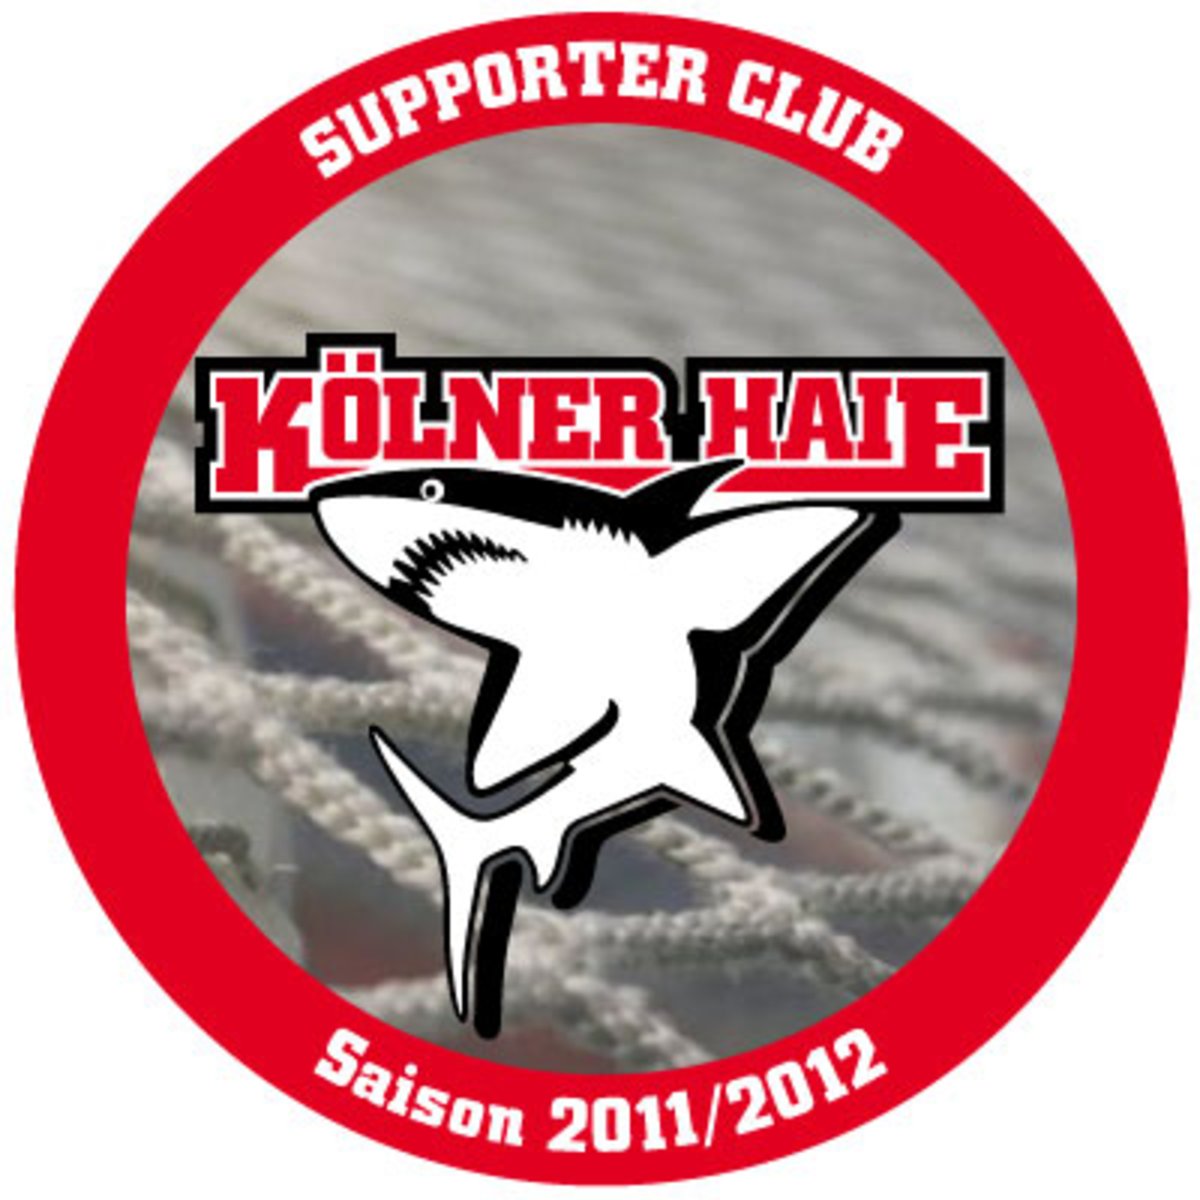 ALDAK als Supporter Club der Kölner Haie 2011/12